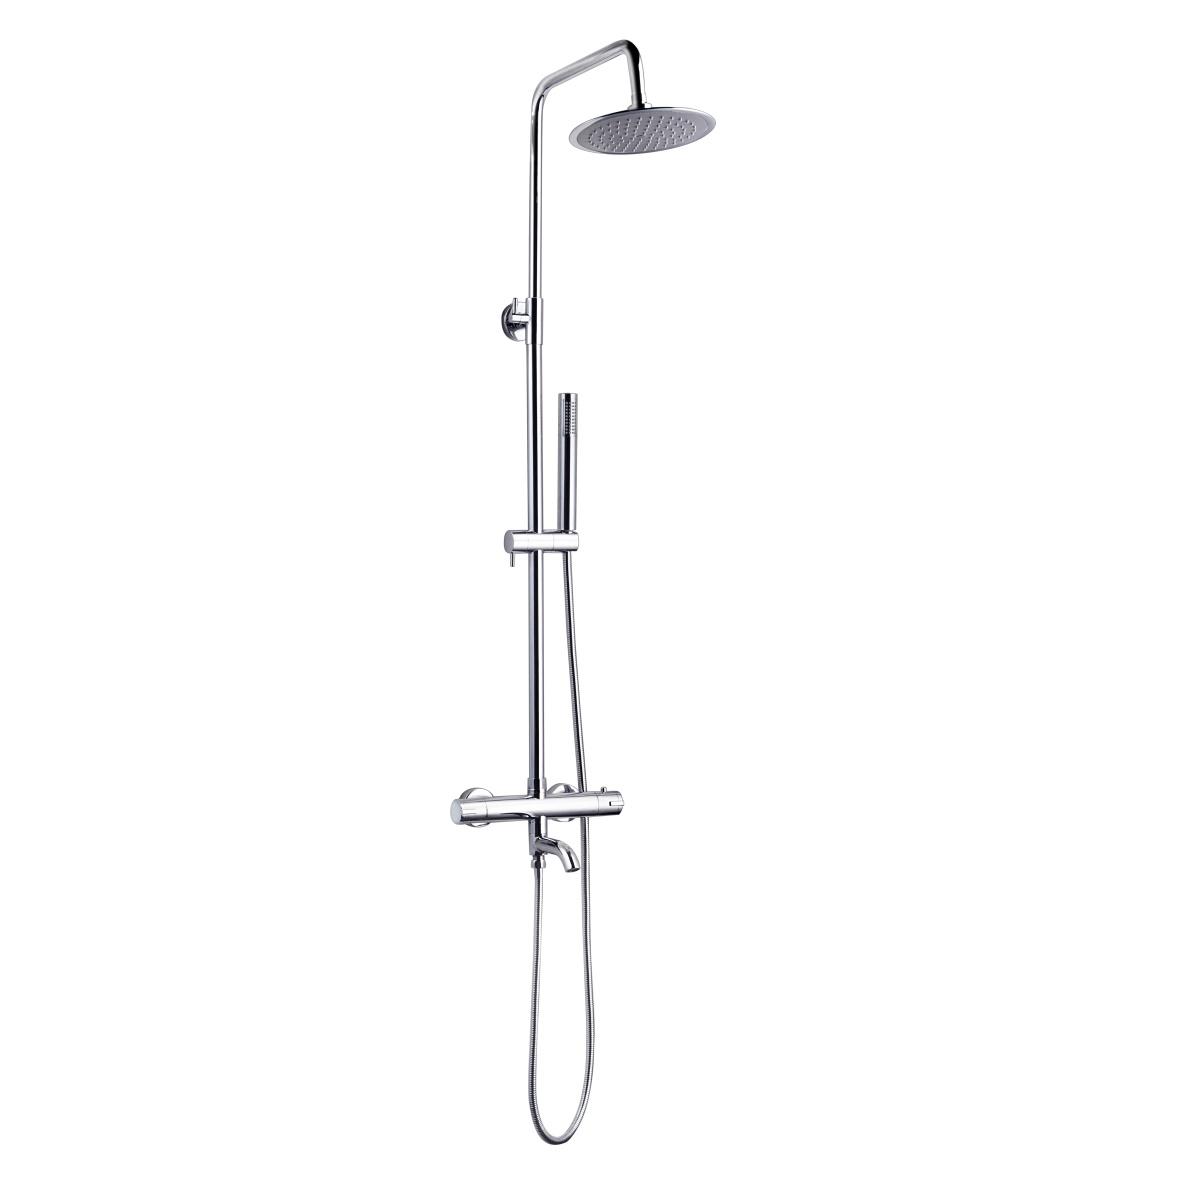 YS34222 Sprchový sloup s výtokem, termostatický dešťový sprchový sloup, výškově nastavitelný;